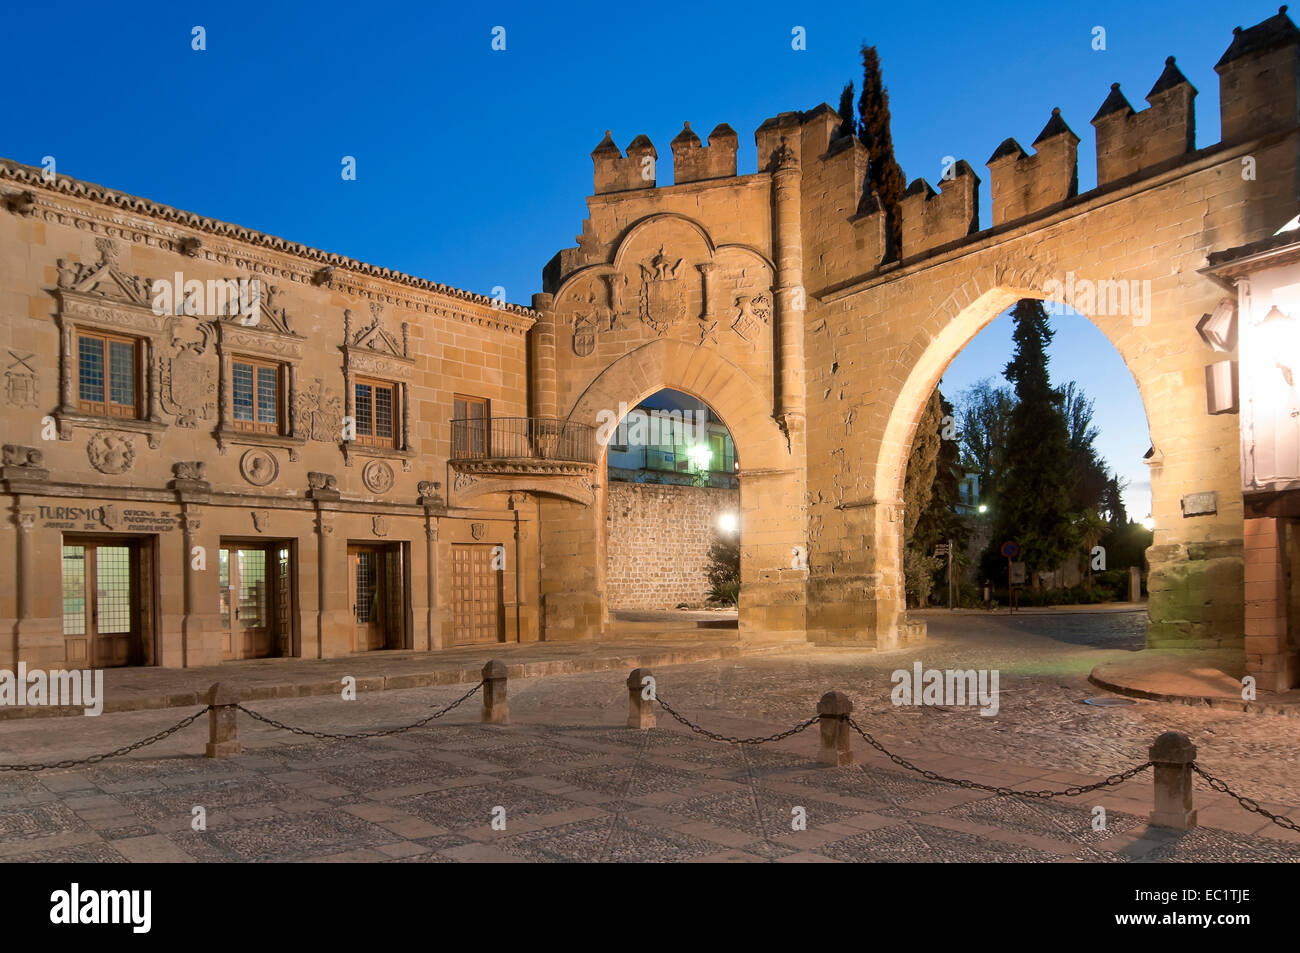 Jaen et porte de passage de Villalar, xvie siècle, Baeza, Jaen province, région d'Andalousie, Espagne, Europe Banque D'Images